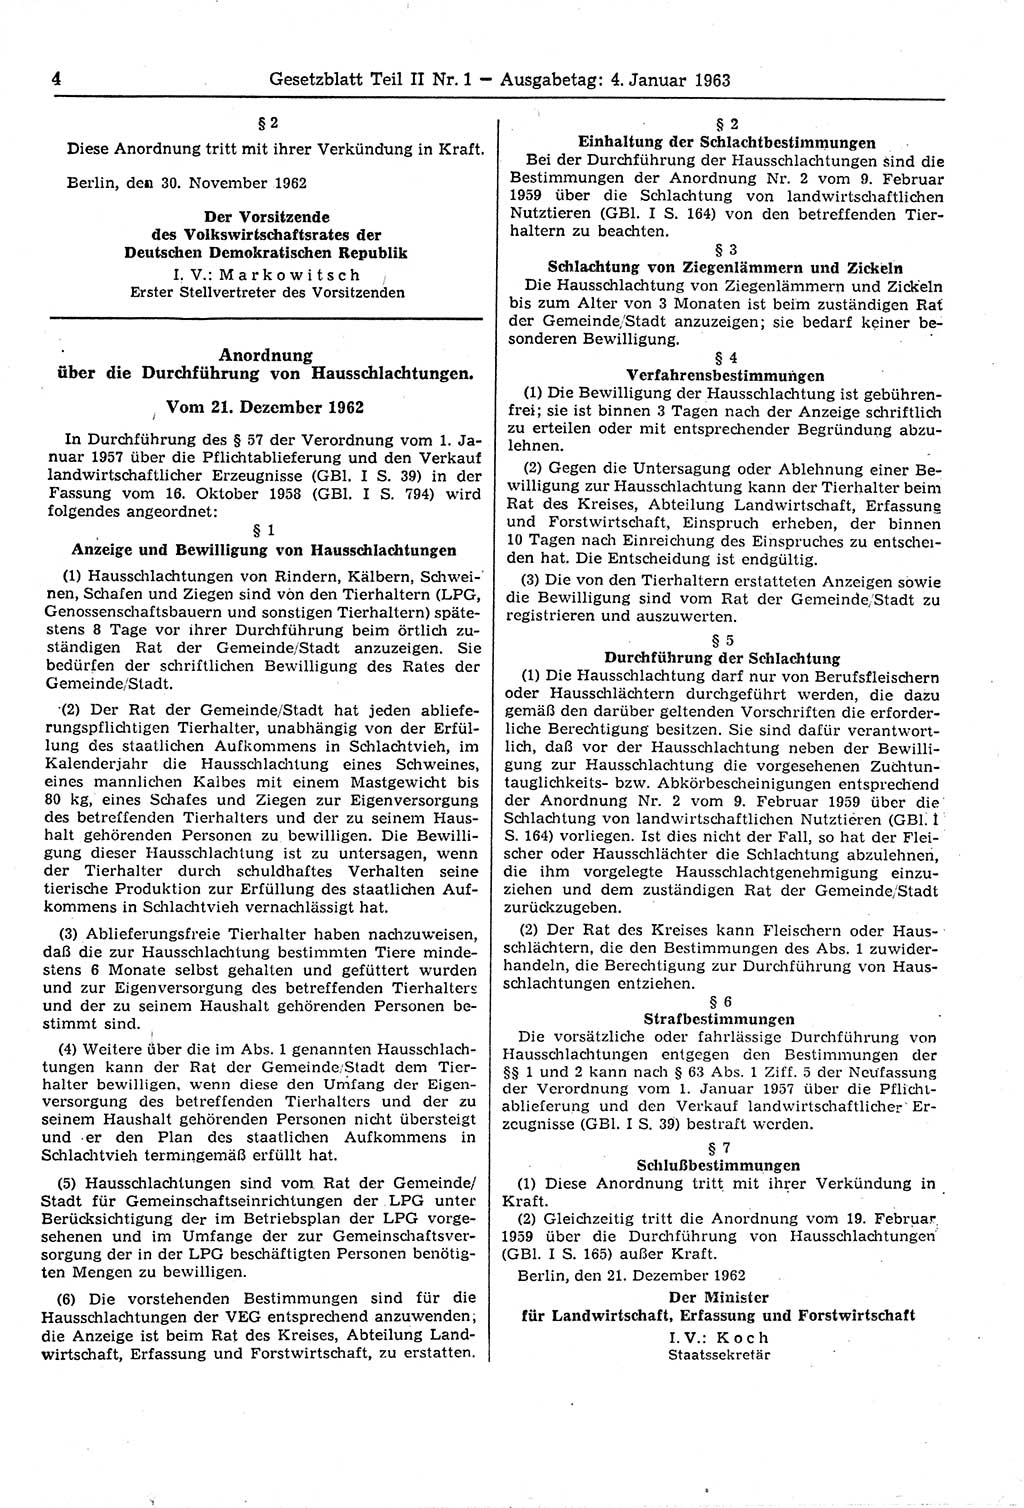 Gesetzblatt (GBl.) der Deutschen Demokratischen Republik (DDR) Teil ⅠⅠ 1963, Seite 4 (GBl. DDR ⅠⅠ 1963, S. 4)